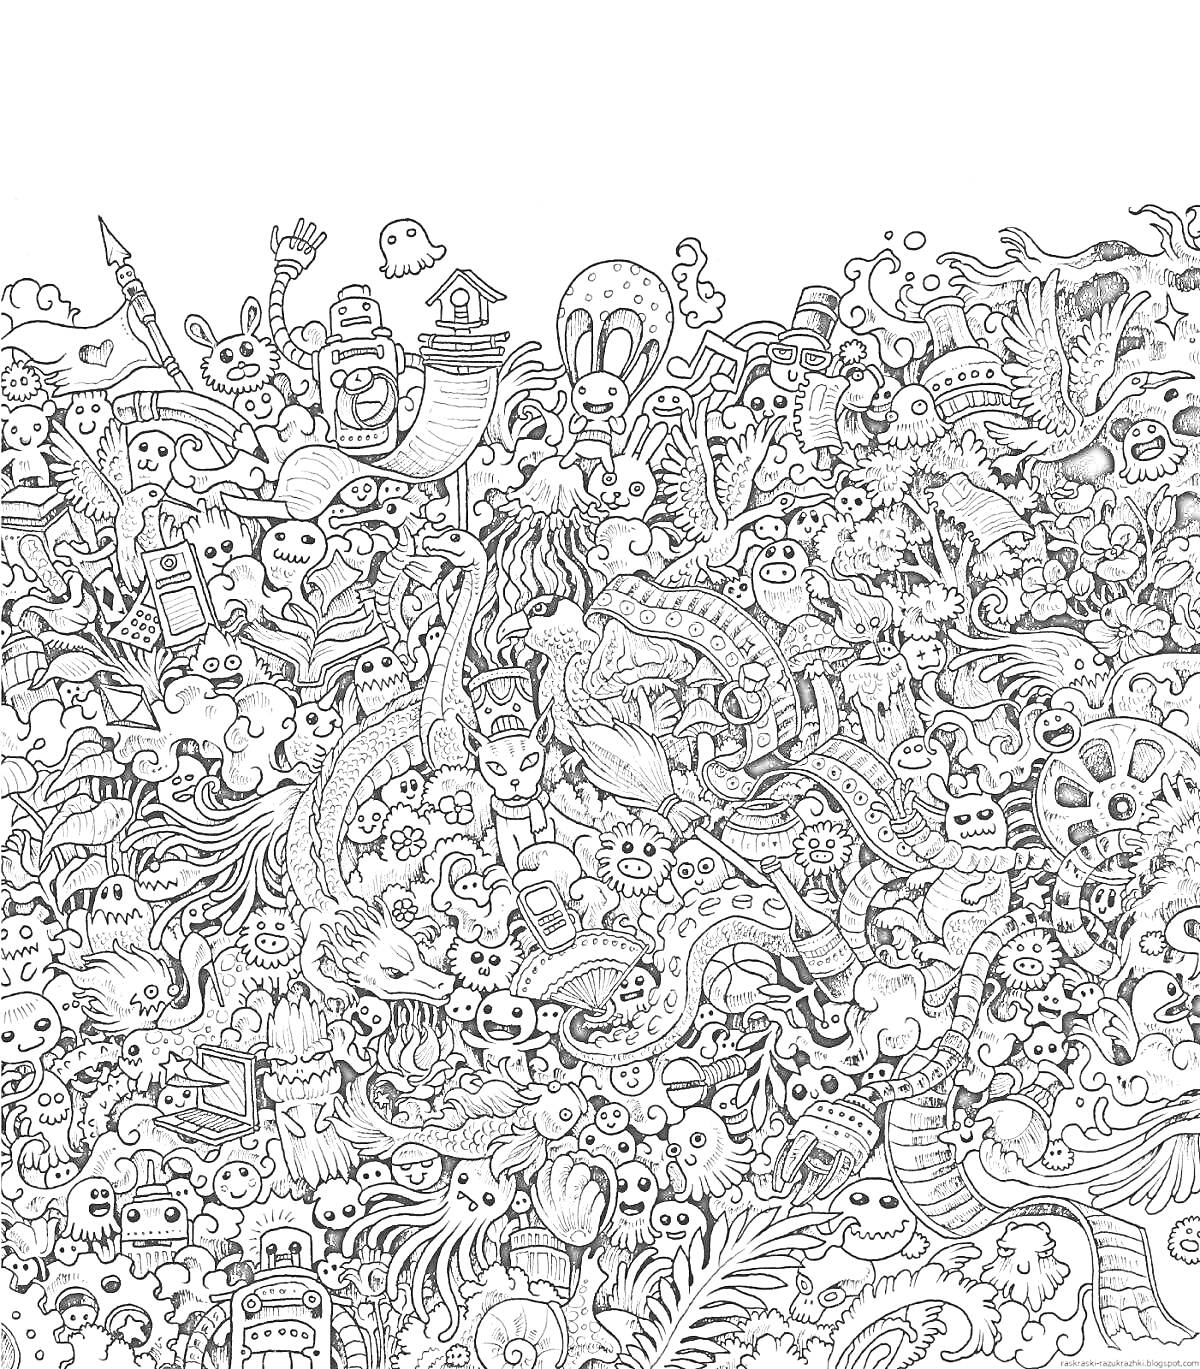 Раскраска Мультяшные герои в хаотичном мире (привидение, динозавр, робот с шестернями, череп, русалка, змеи, перья, сова, домик, факел, птицы, цветы, рыбы, листва и множество мелких персонажей)